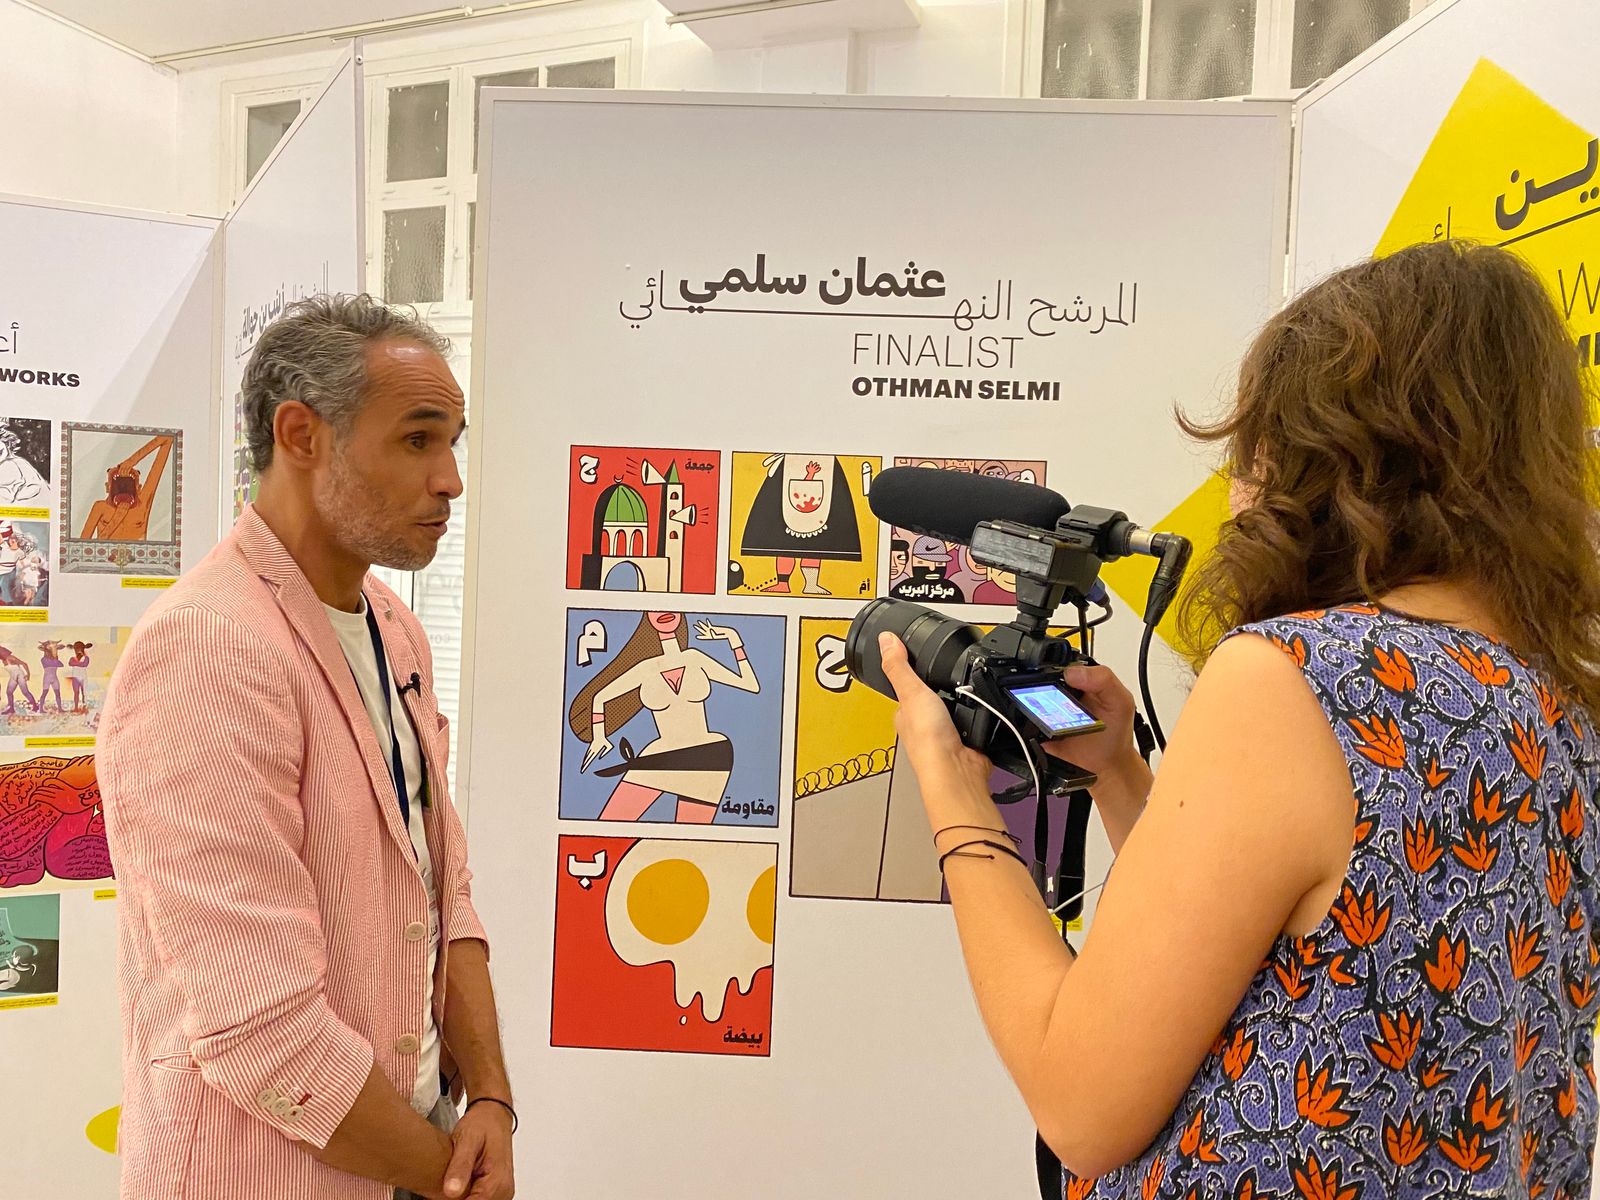 أحد المشاركين في مهرجان بيروت للشرائط المصورة الذي يعقد في الفترة ما بين 7 إلى 10 أكتوبر 2021 في العاصمة اللبنانية بيروت - الشرق